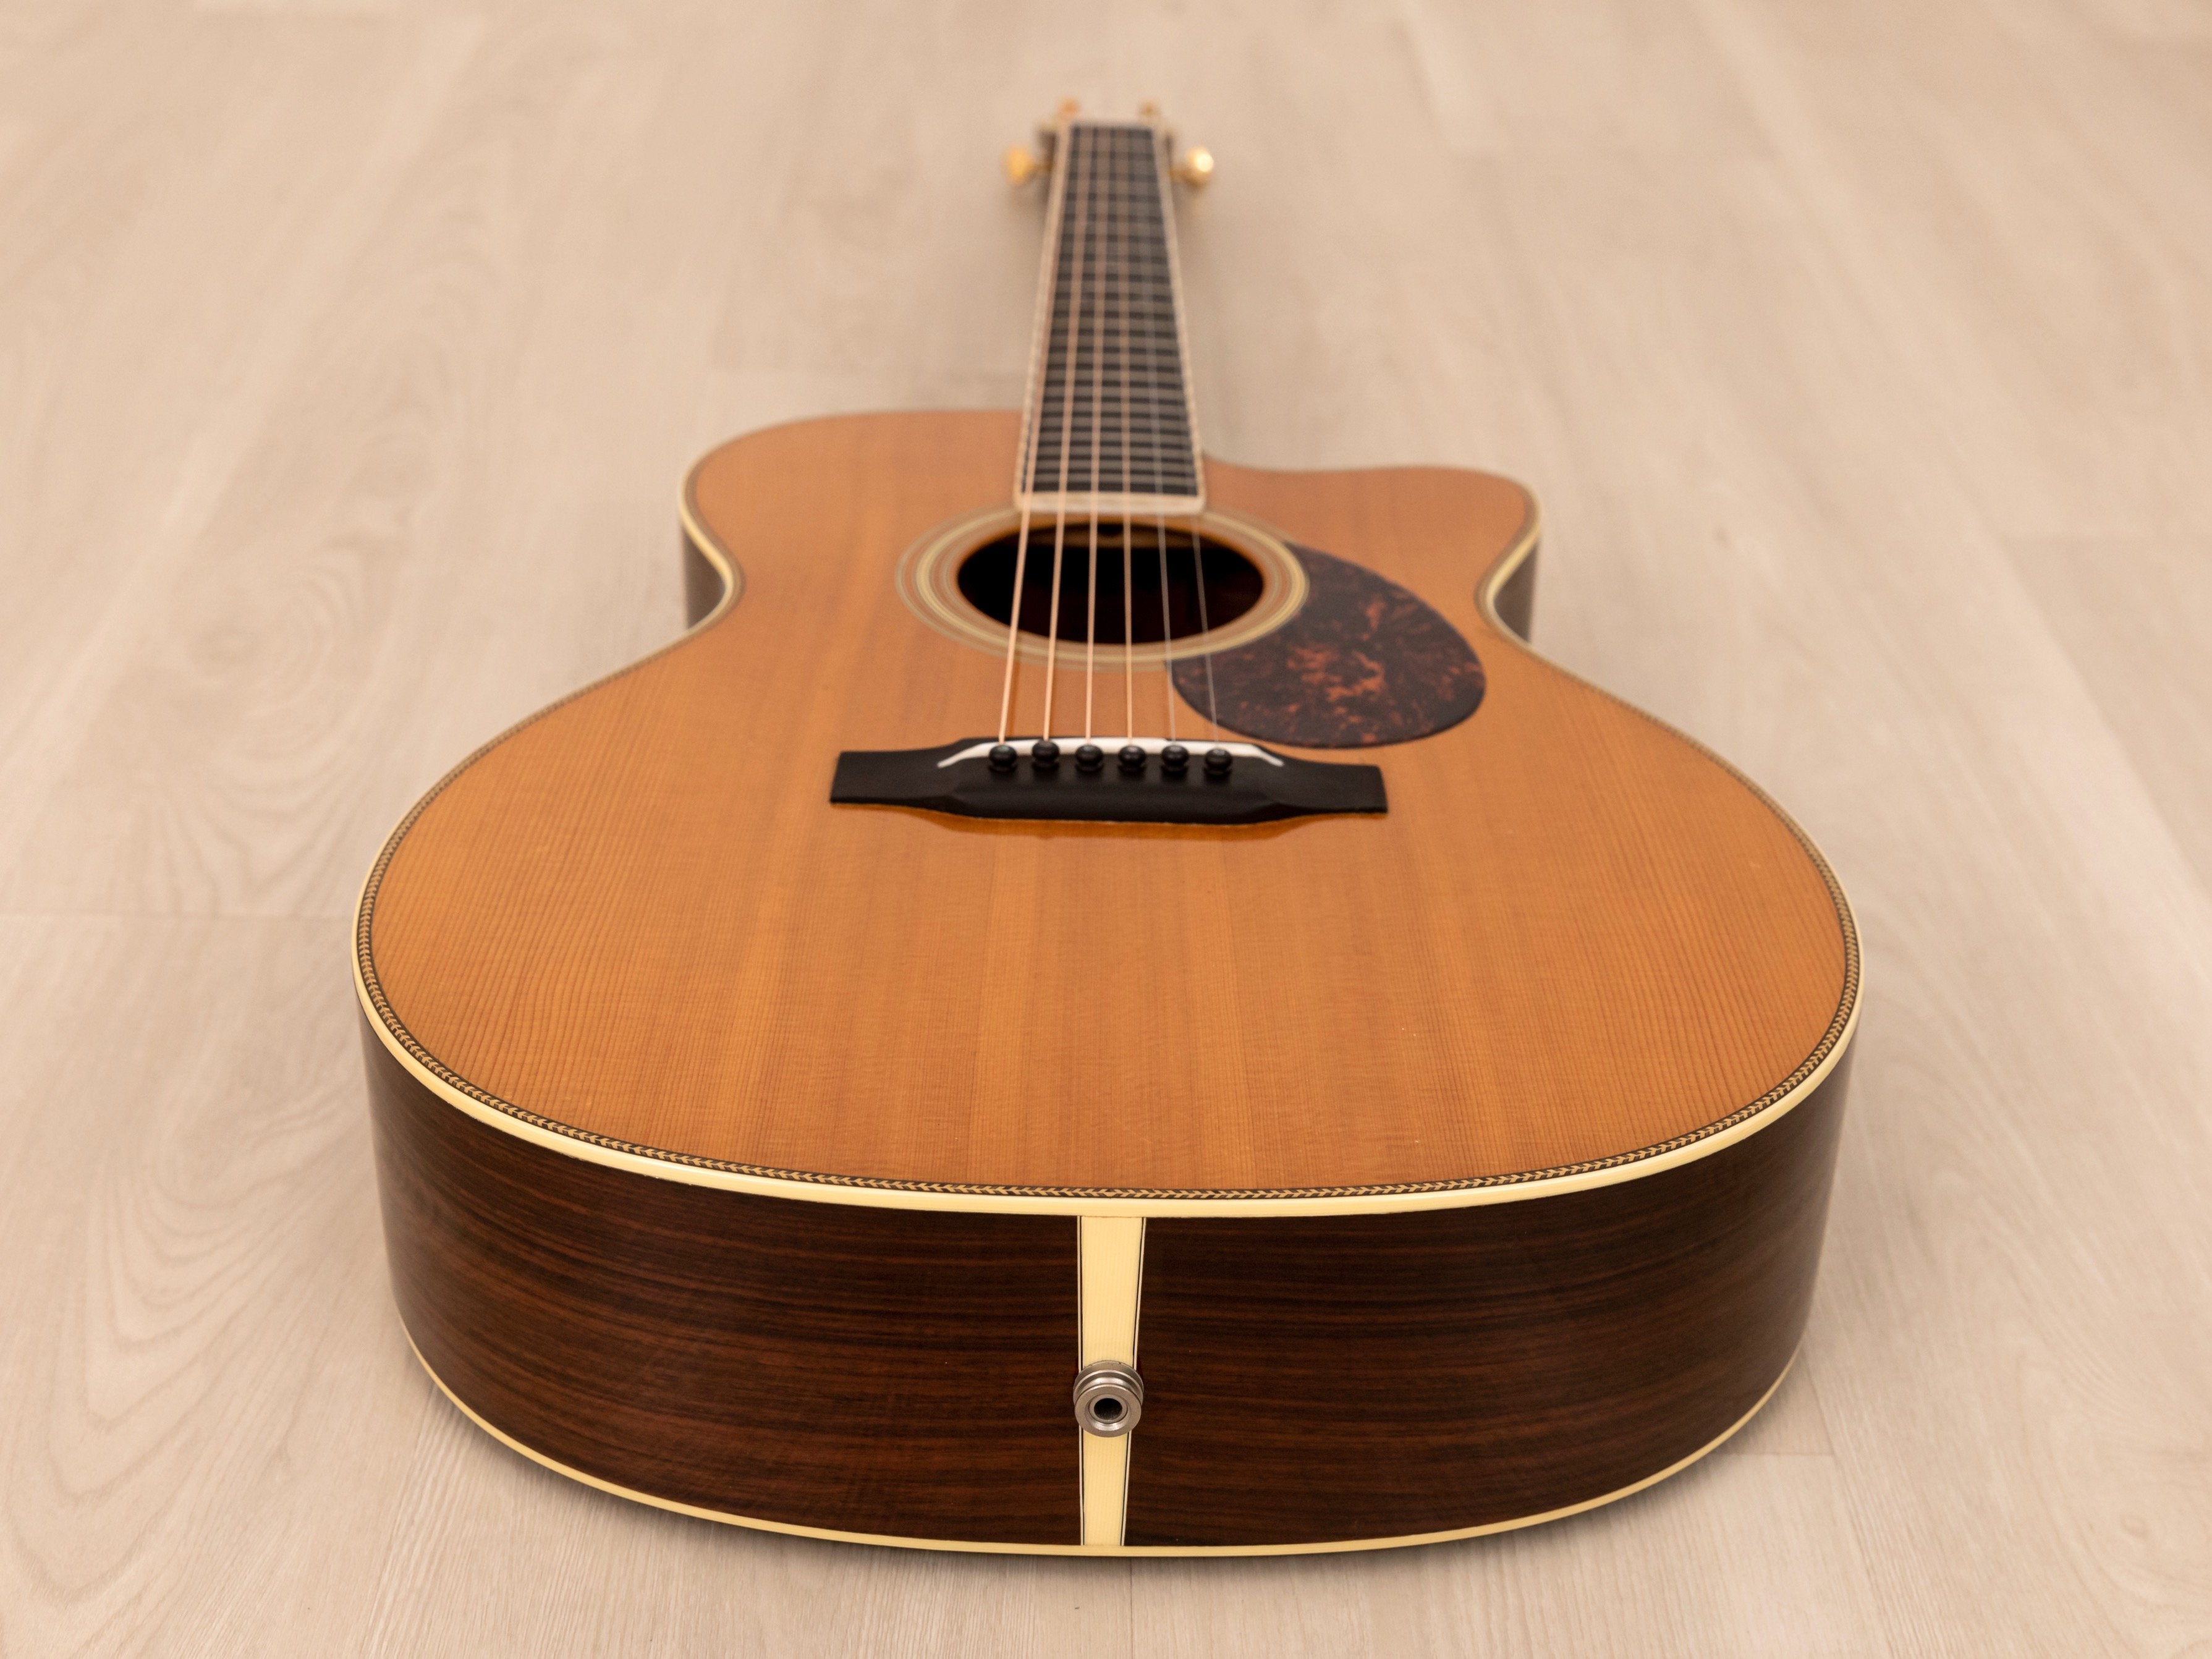 2001 Martin OM-28V Cutaway Herringbone Custom-Ordered One-Off Acoustic Guitar w/ Pickup, Case